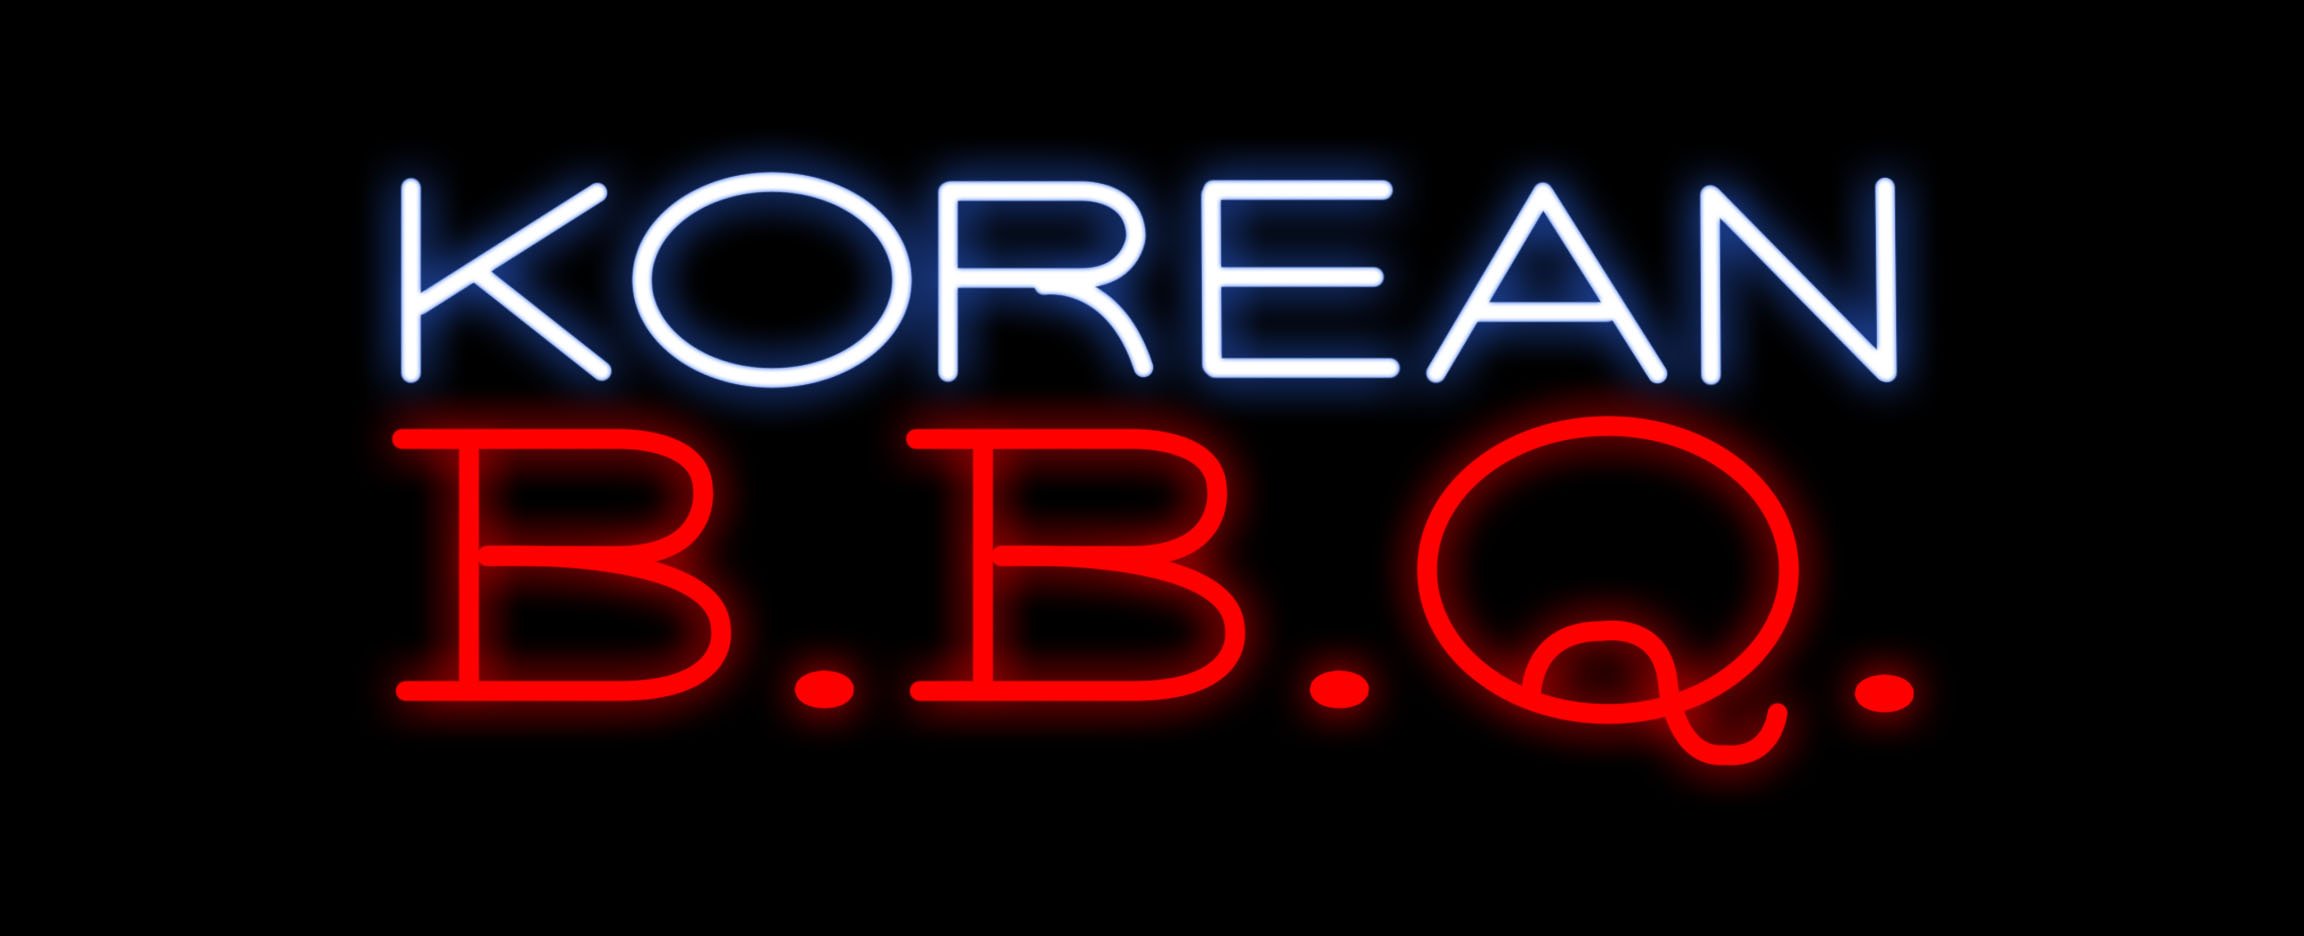 Image of Korean B.B.Q LED Flex